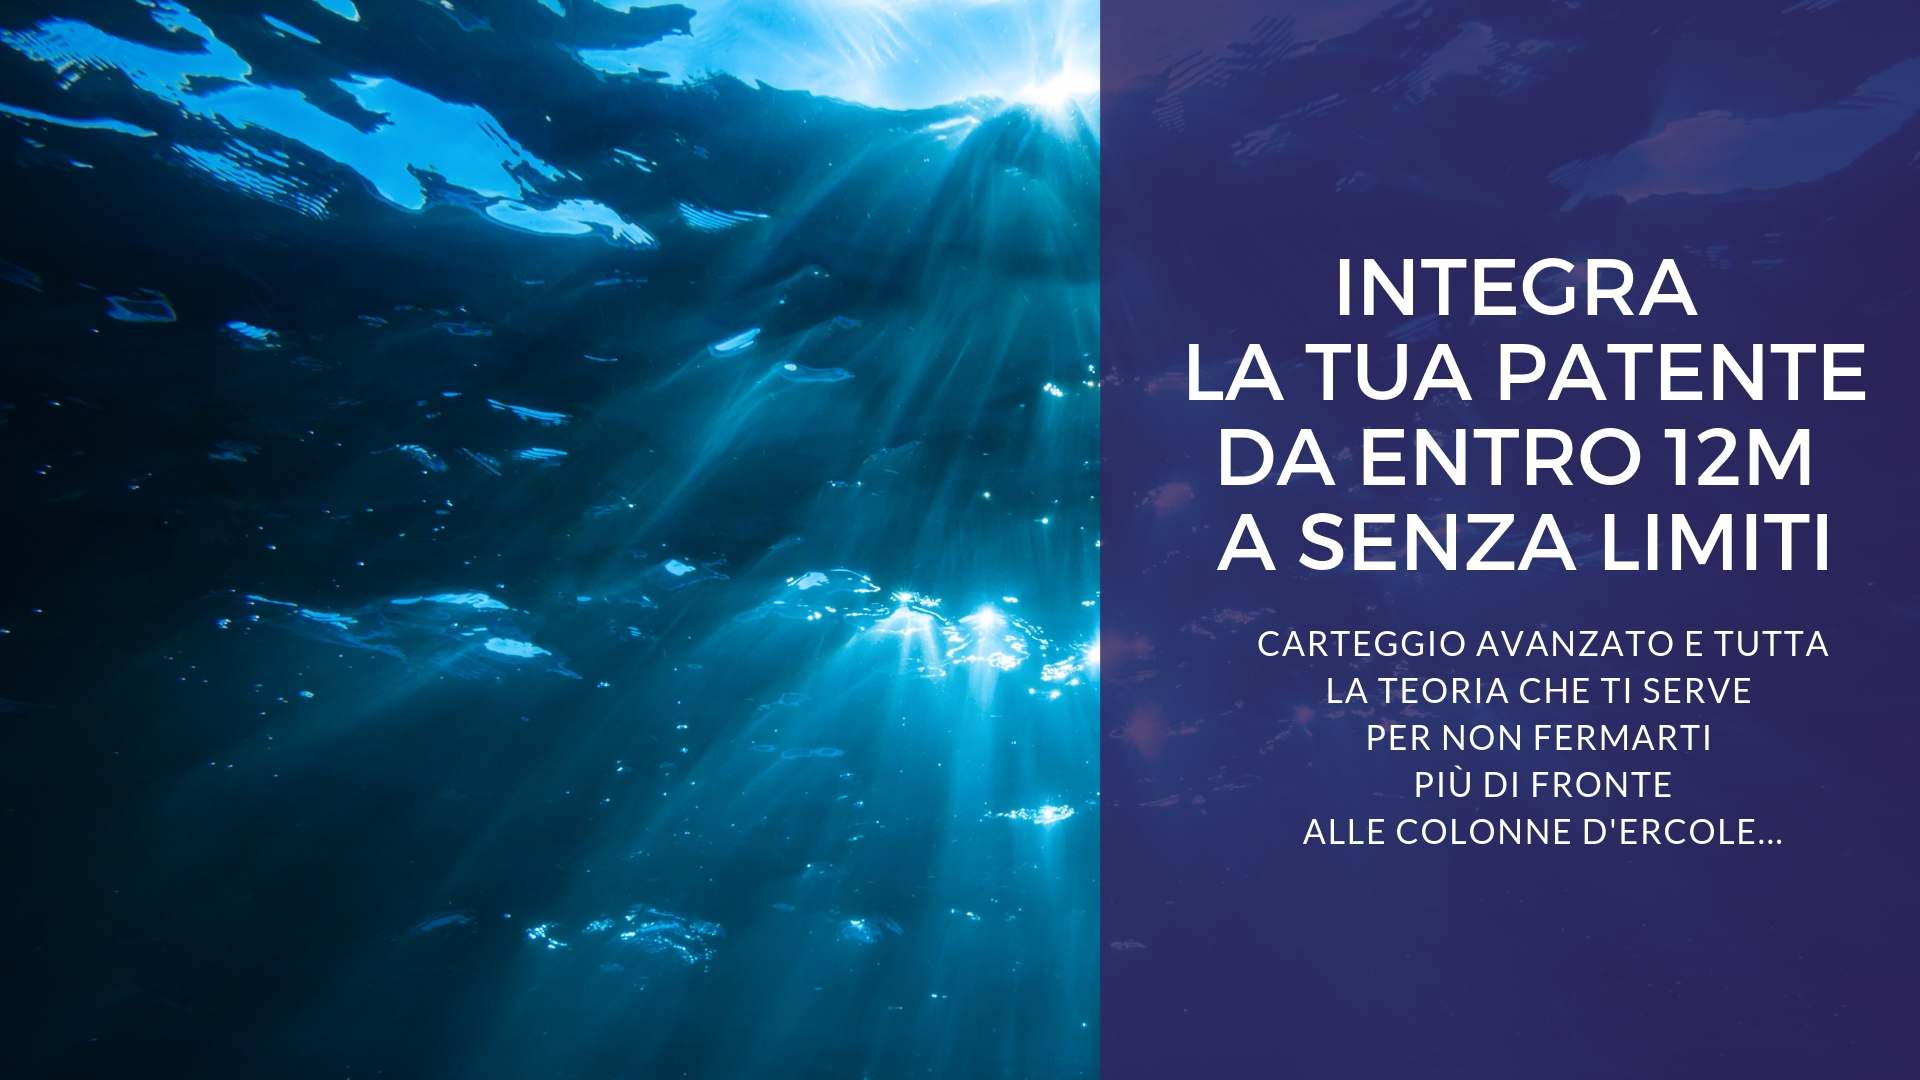 Scuola nautica Blu Oltremare Milano: Corso integrazione da entro 12M a senza limiti